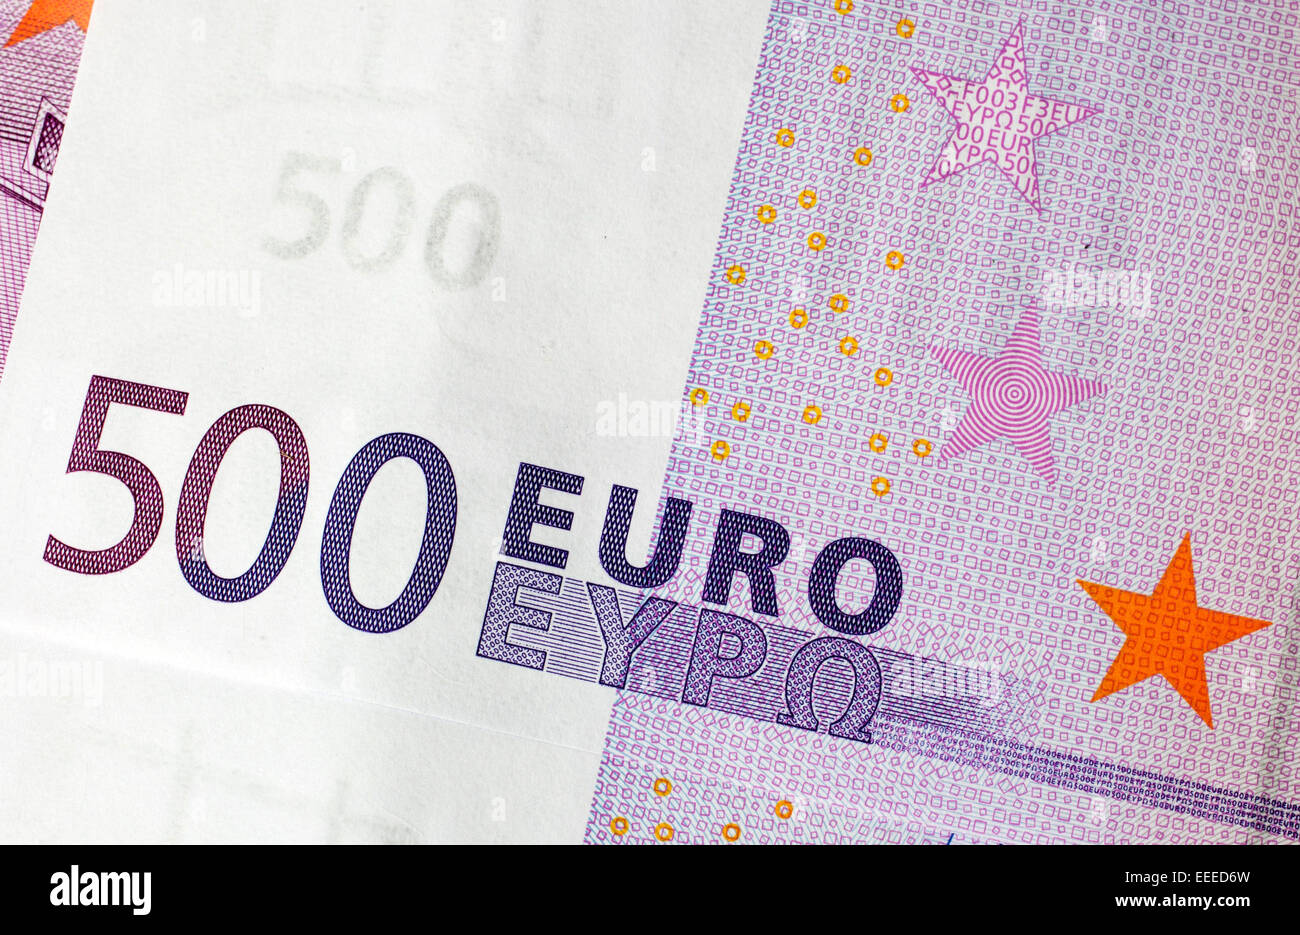 500 Euro banknotes, 08.January 2015 Stock Photo